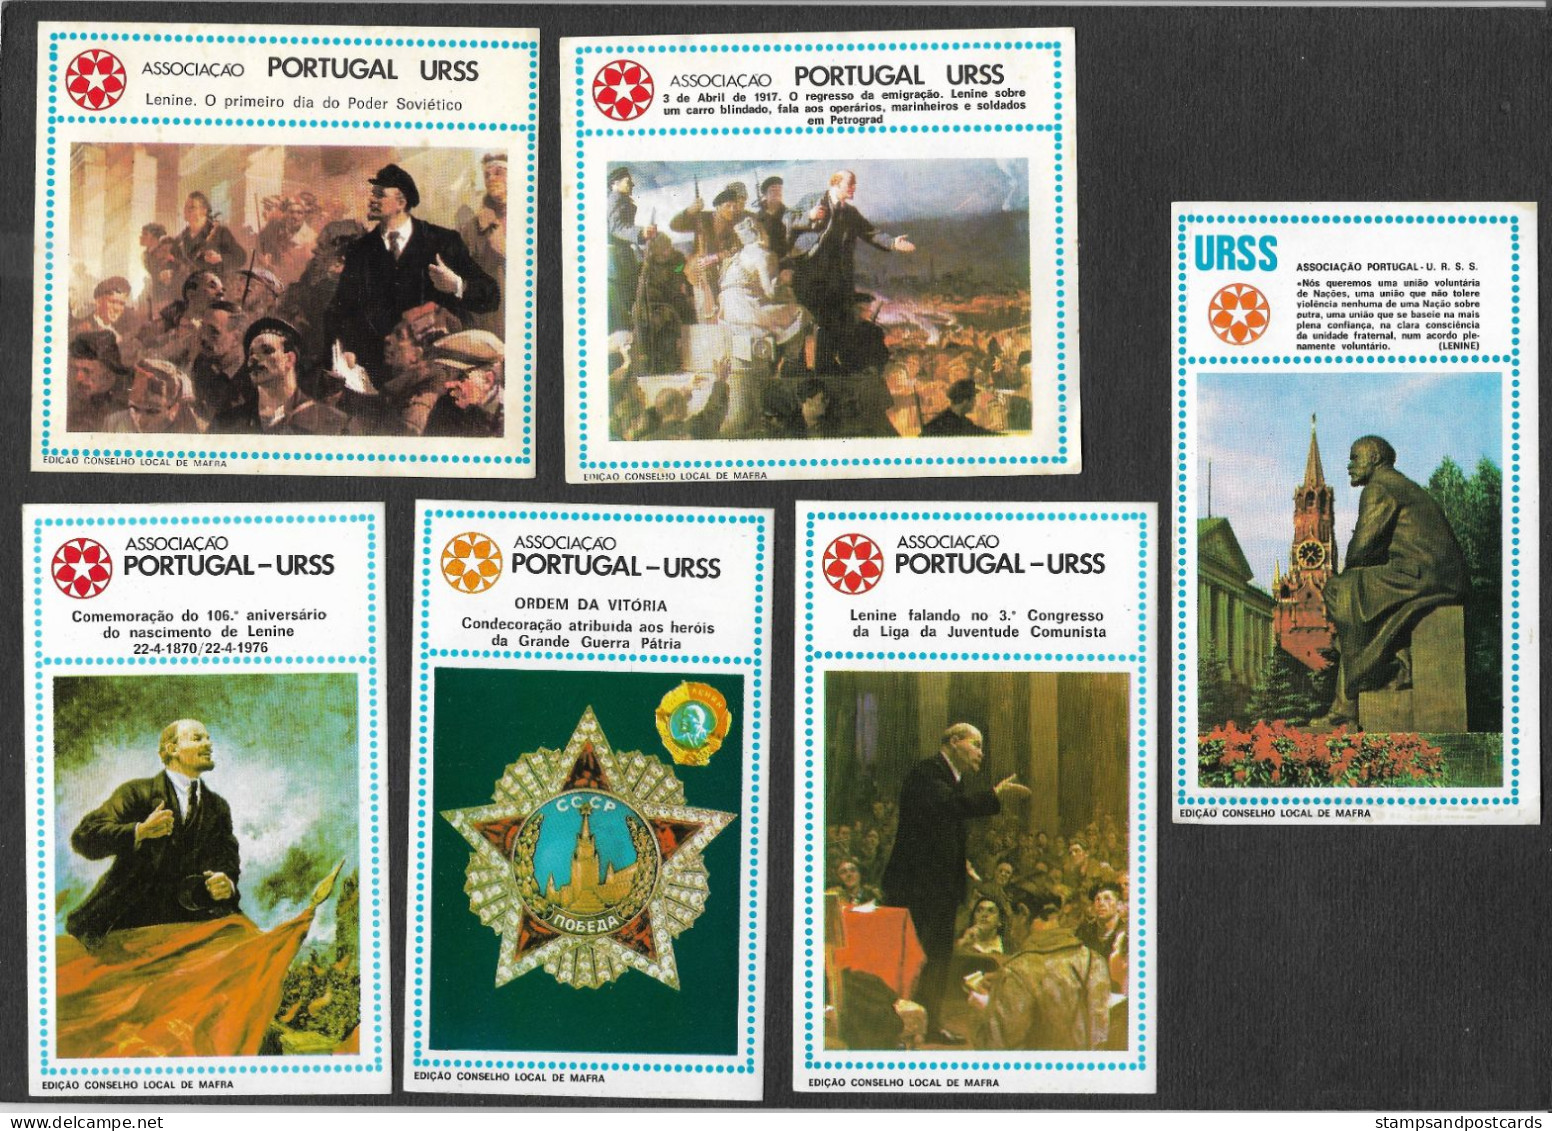 Portugal URSS USSR Association Amitié Union Soviètique Russie Communiste 8 Autocollant Communist Political Sticker 1976 - Aufkleber